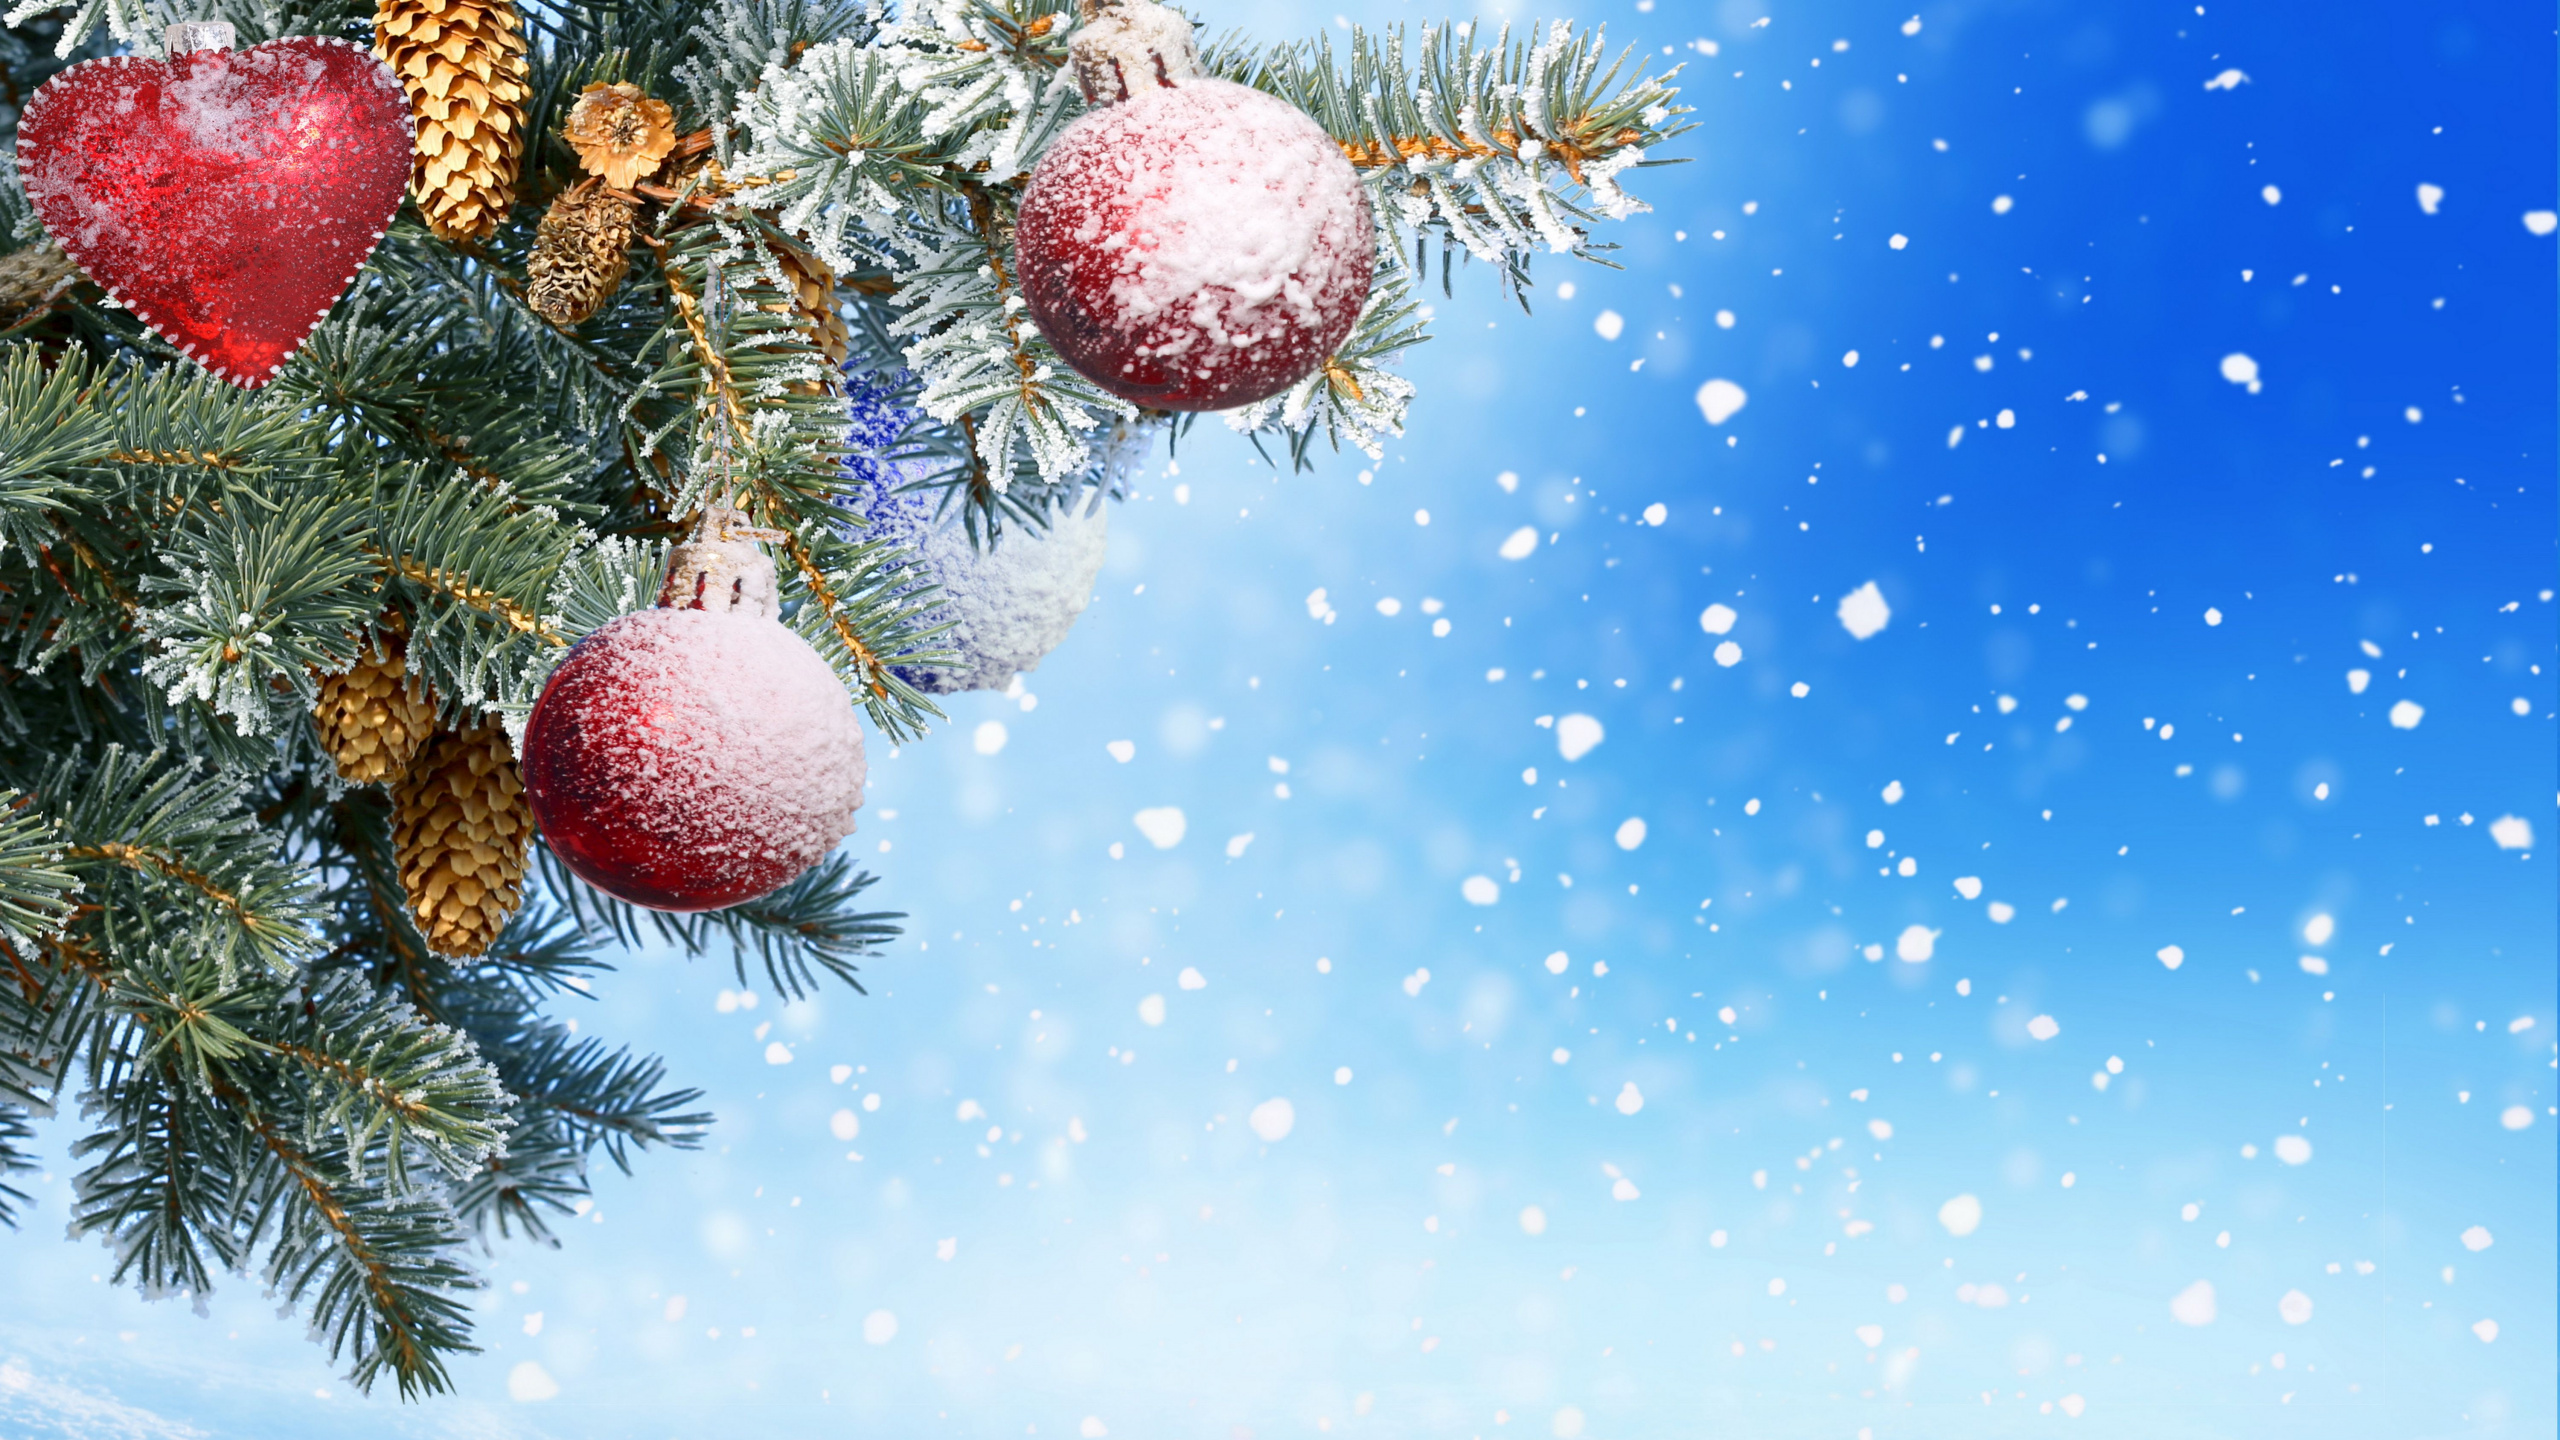 Neujahr, Weihnachten, Christmas Ornament, Baum, Fir. Wallpaper in 2560x1440 Resolution